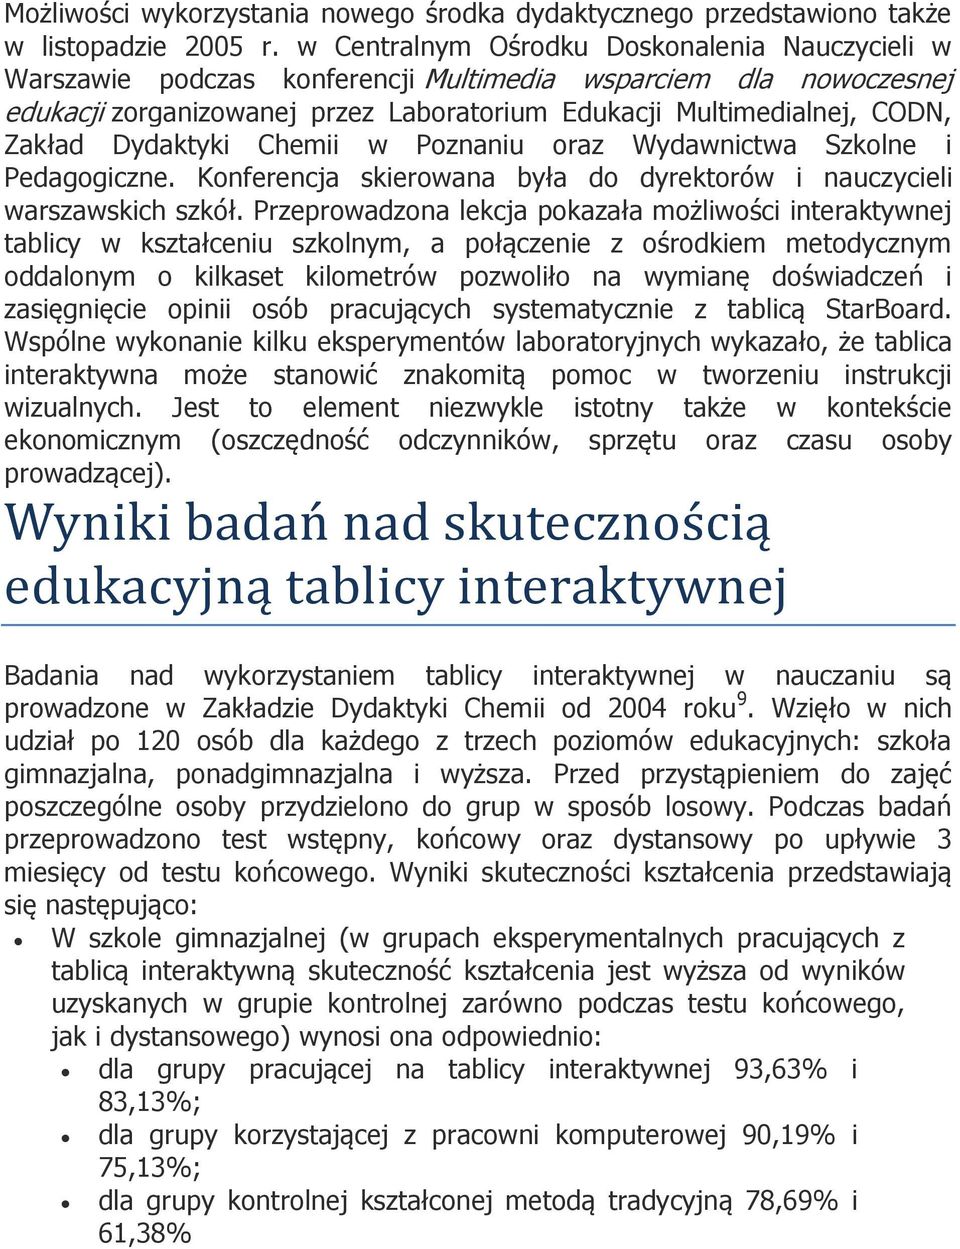 Dydaktyki Chemii w Poznaniu oraz Wydawnictwa Szkolne i Pedagogiczne. Konferencja skierowana była do dyrektorów i nauczycieli warszawskich szkół.